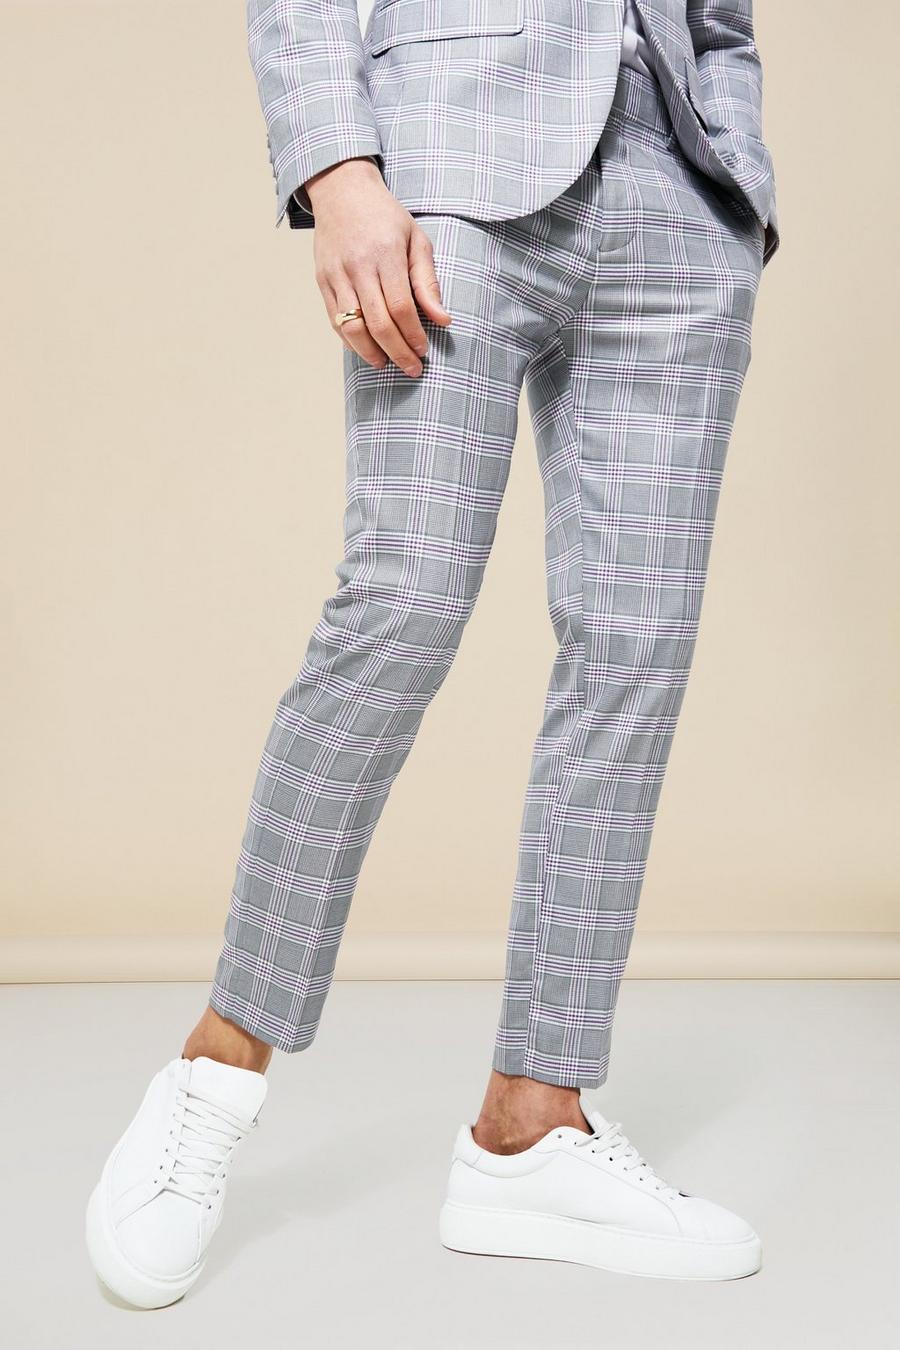 אפור grigio מכנסי חליפה קרופ סקיני עם הדפס משבצות